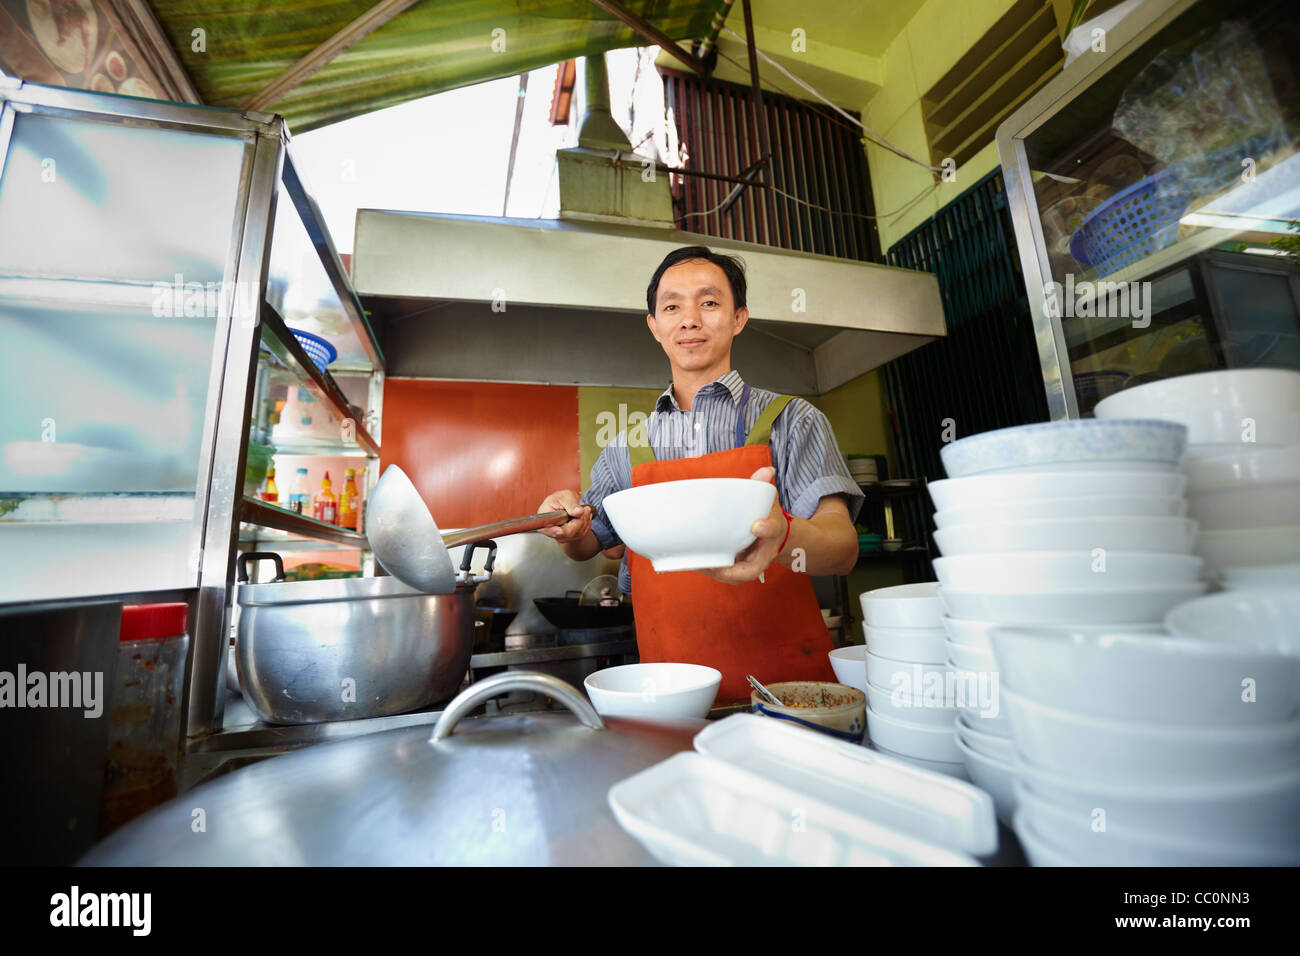 El chef prepara la comida callejera tradicional asiática y trabajar en la cocina del restaurante. De forma horizontal, vista frontal Foto de stock